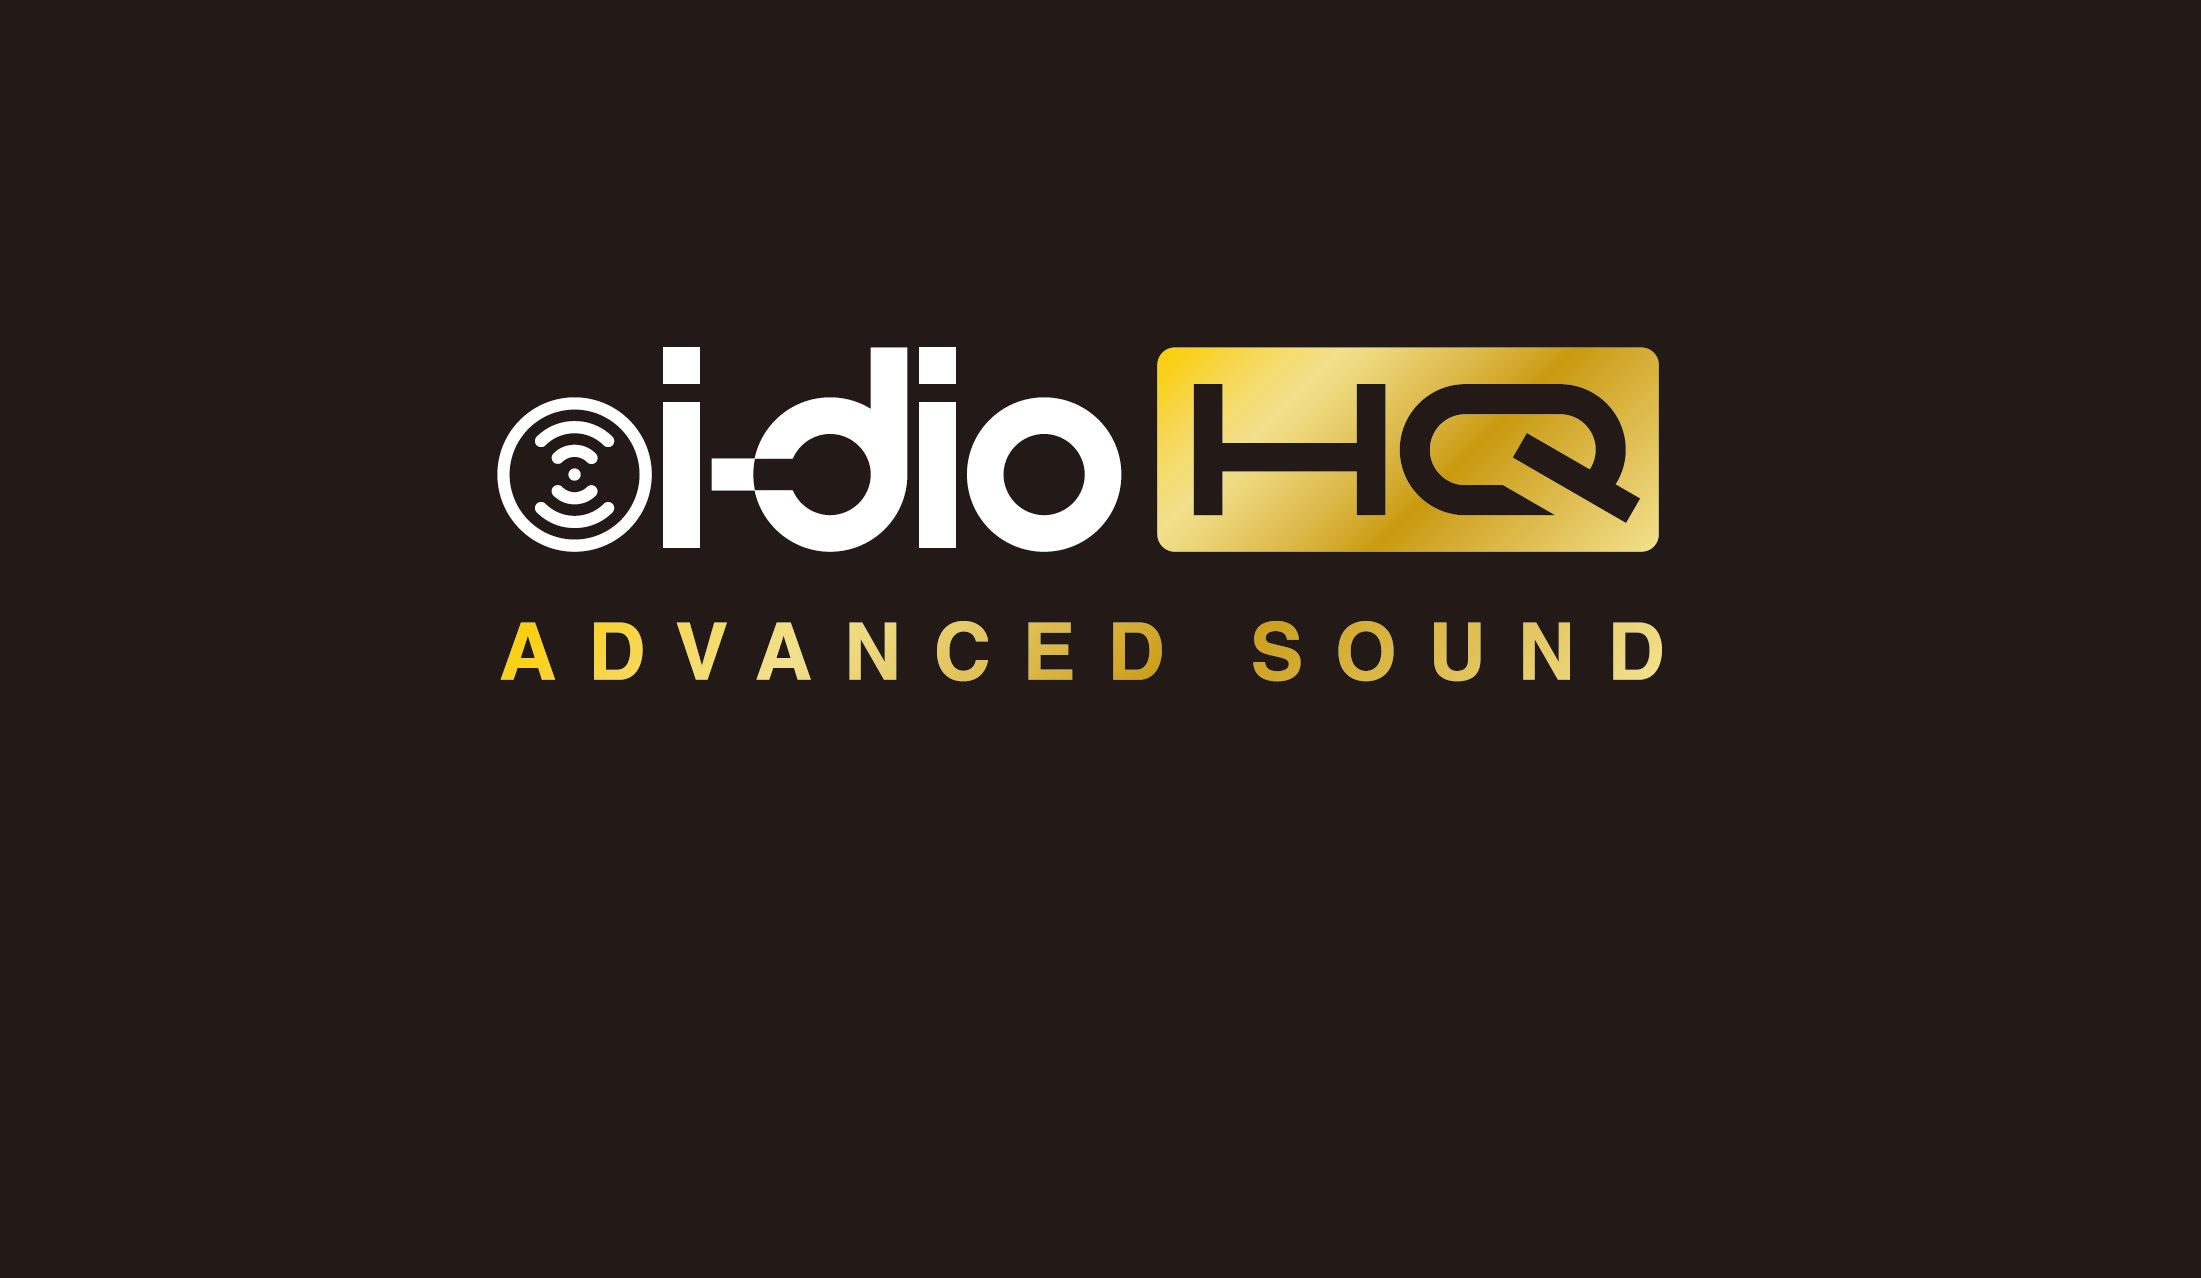 【i-dio】7/23開始のハイレゾ級放送「i-dio HQ」の先行試聴を会場で実施